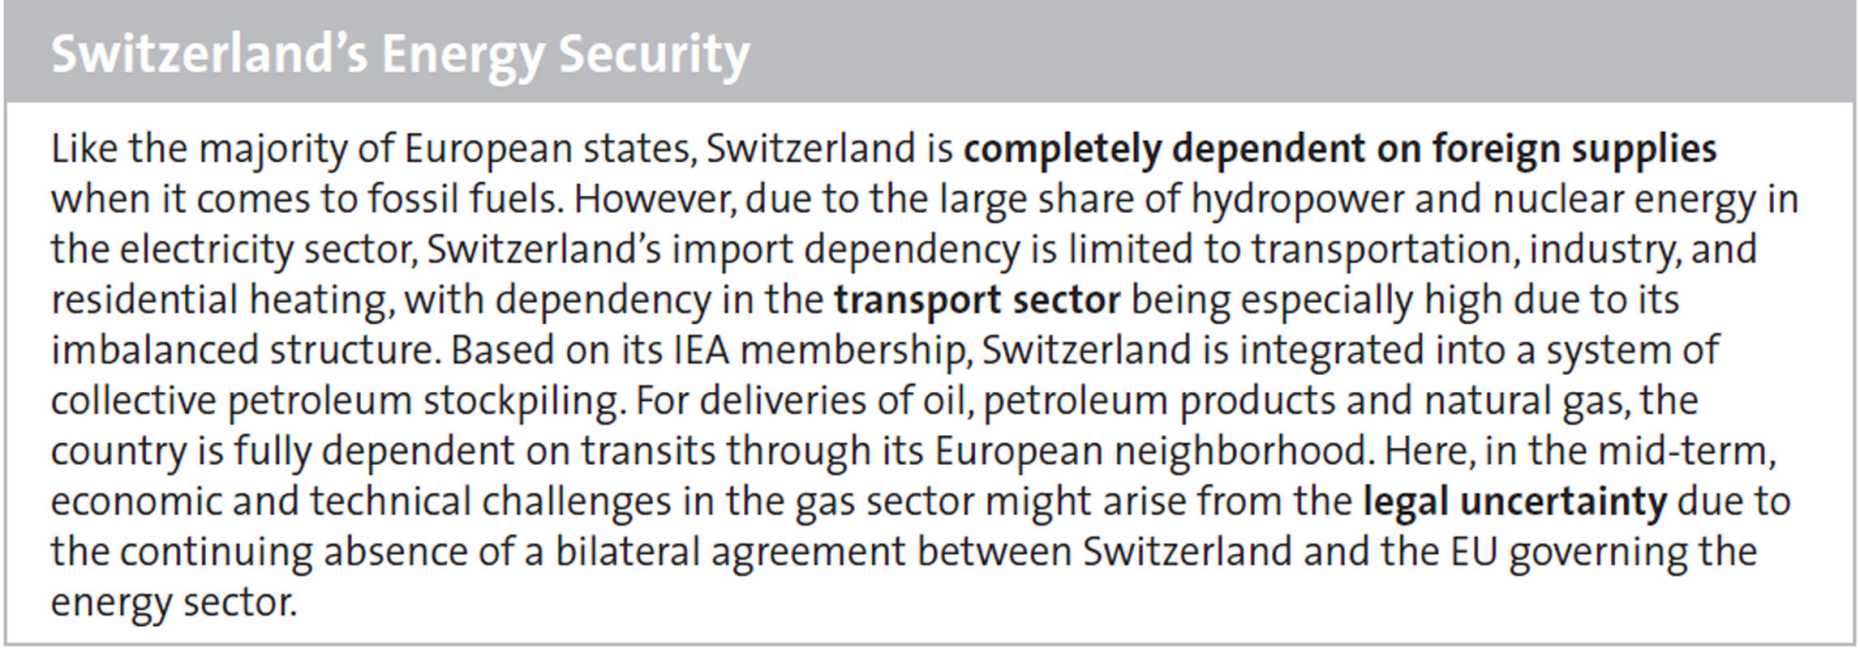 Switzerland’s Energy Security